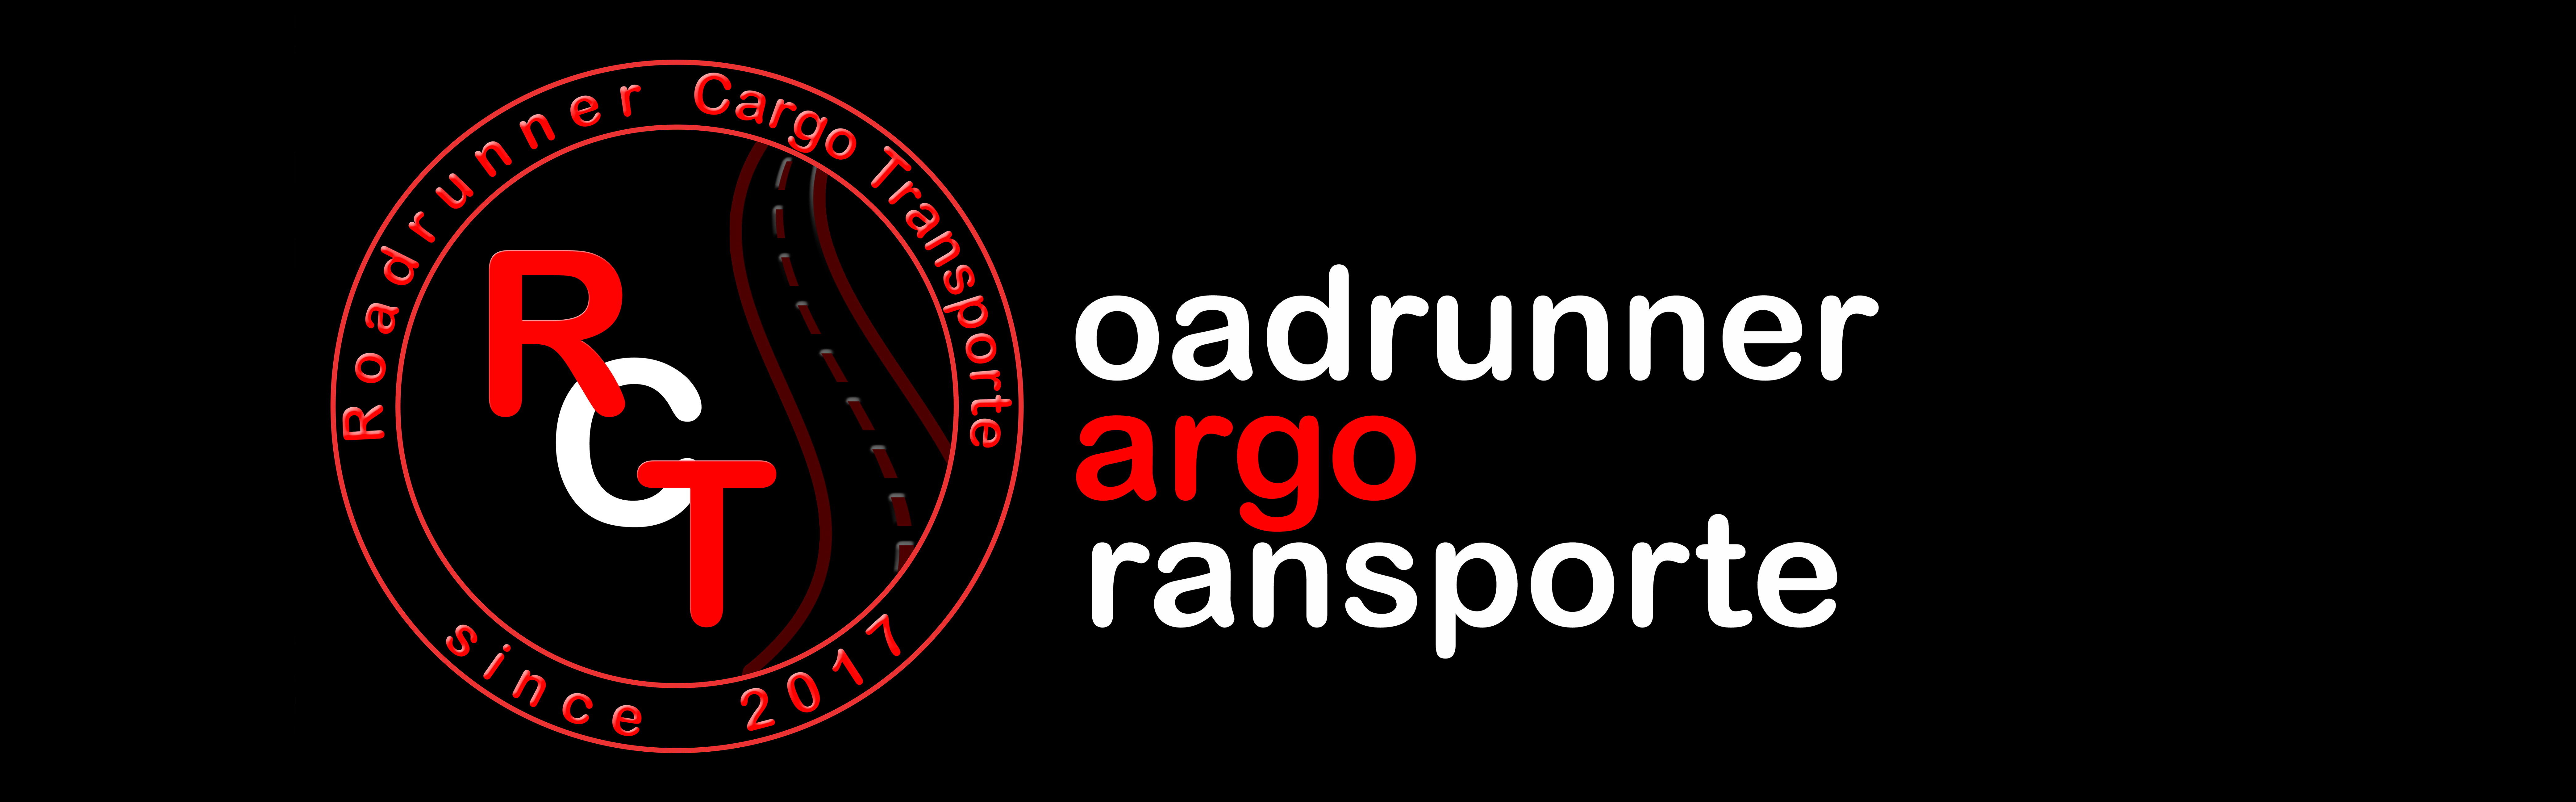 Roadrunner Cargo Transporte [RCT] 